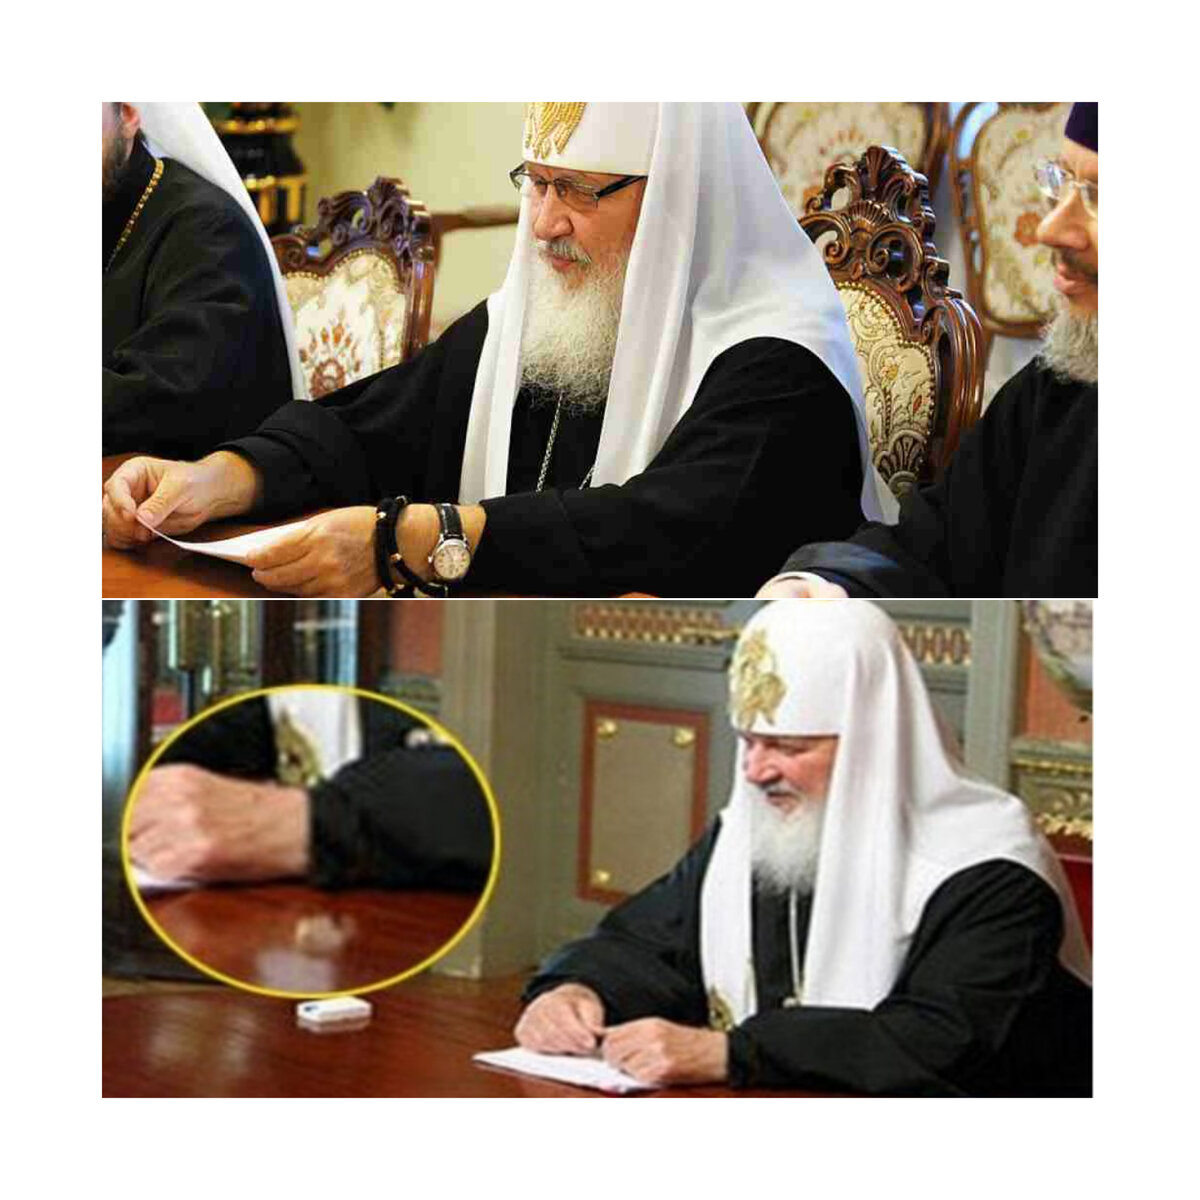 Патриарх Кирилл роскошь